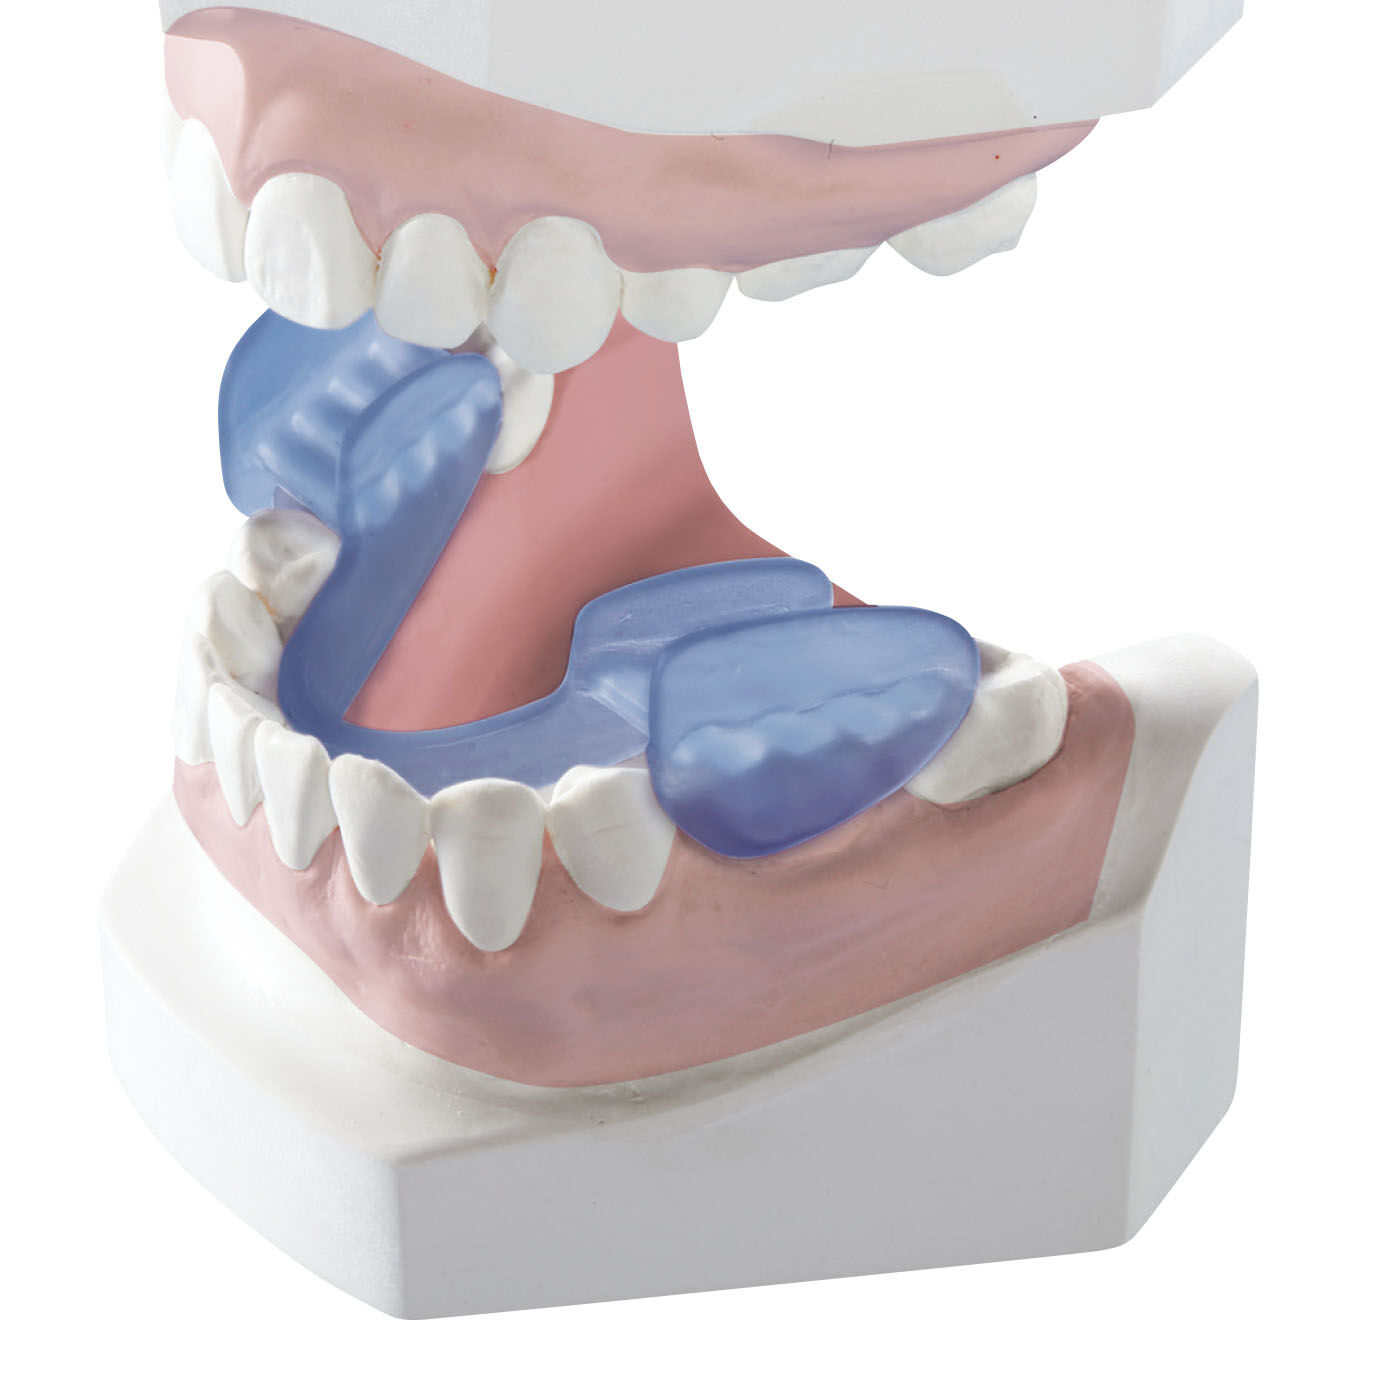 デンタルマウスピース 歯ぎしり 歯並び 口元ケア NEW 3段階でのケア - 4